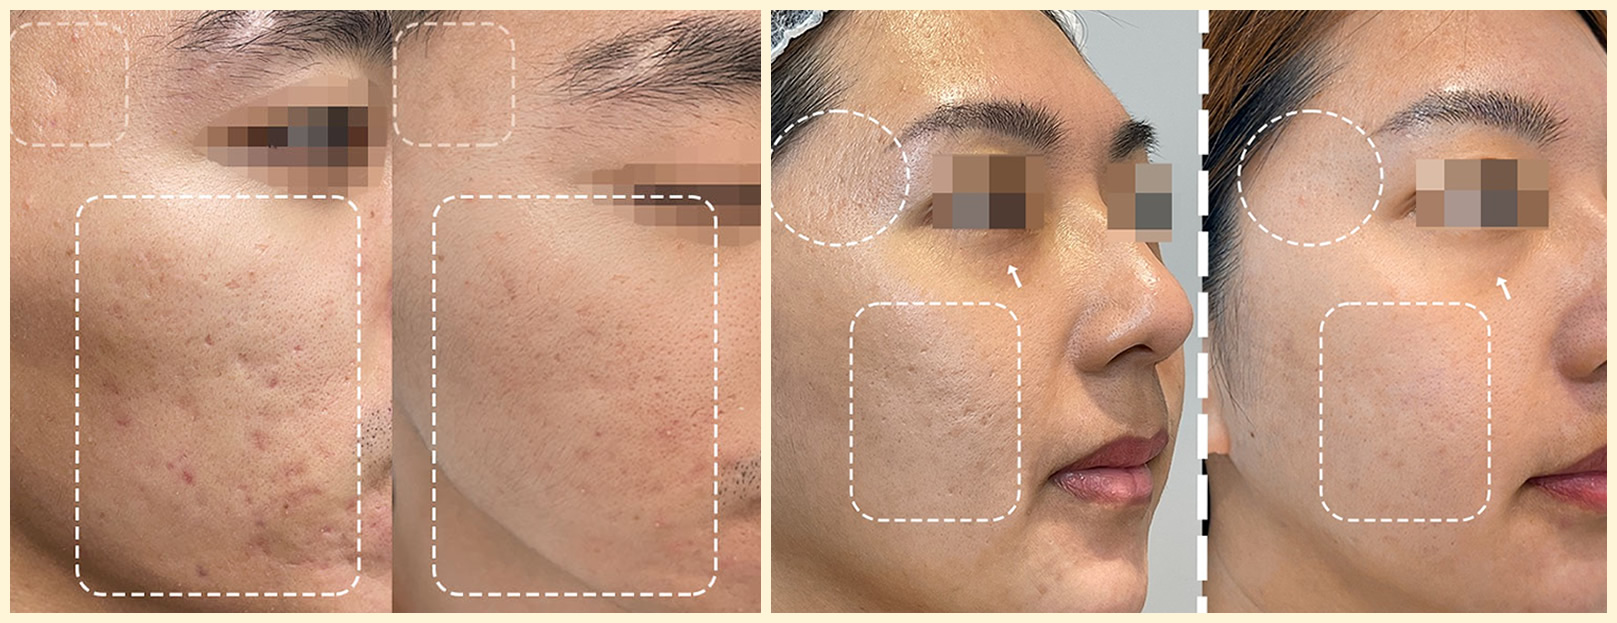 韓后醫美 提可塑 Tixel 臉部 痘痘 痘疤 毛孔粗大 素人真實案例